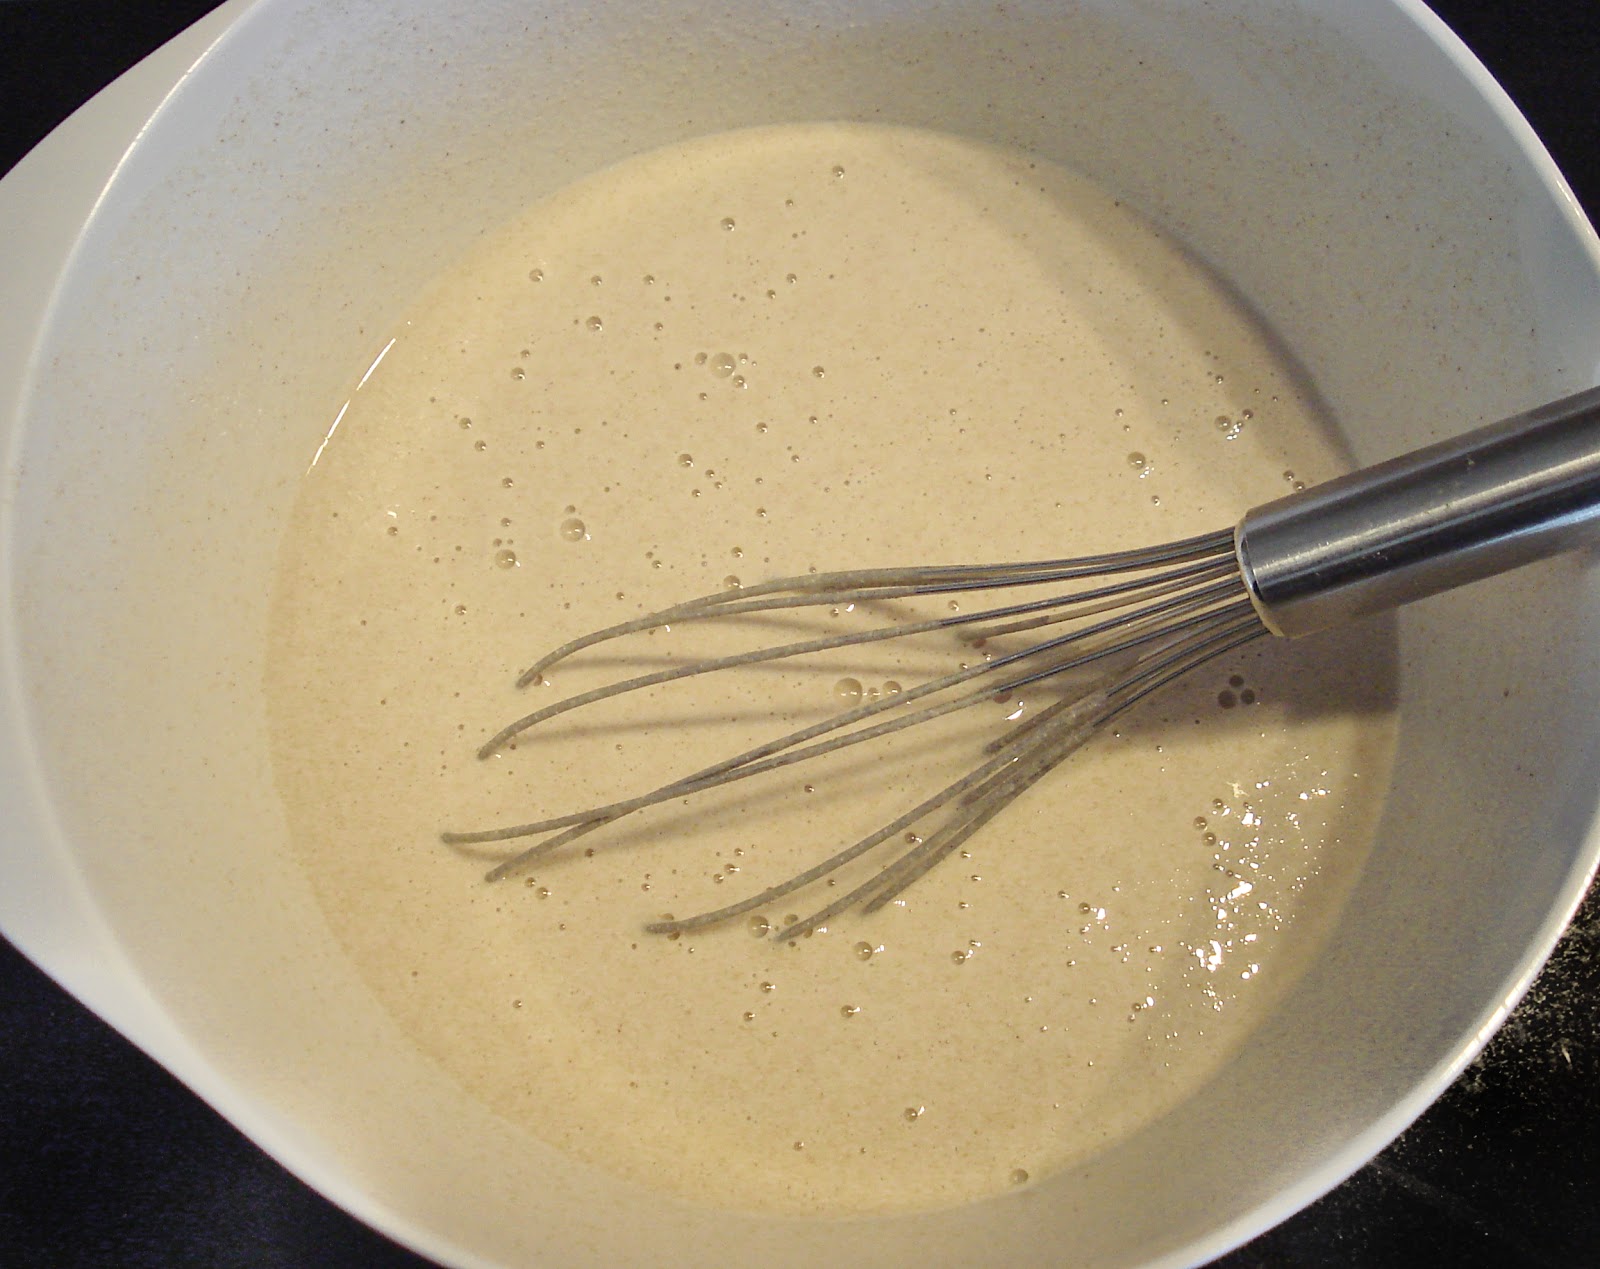 Mix the buckwheat pancake batter